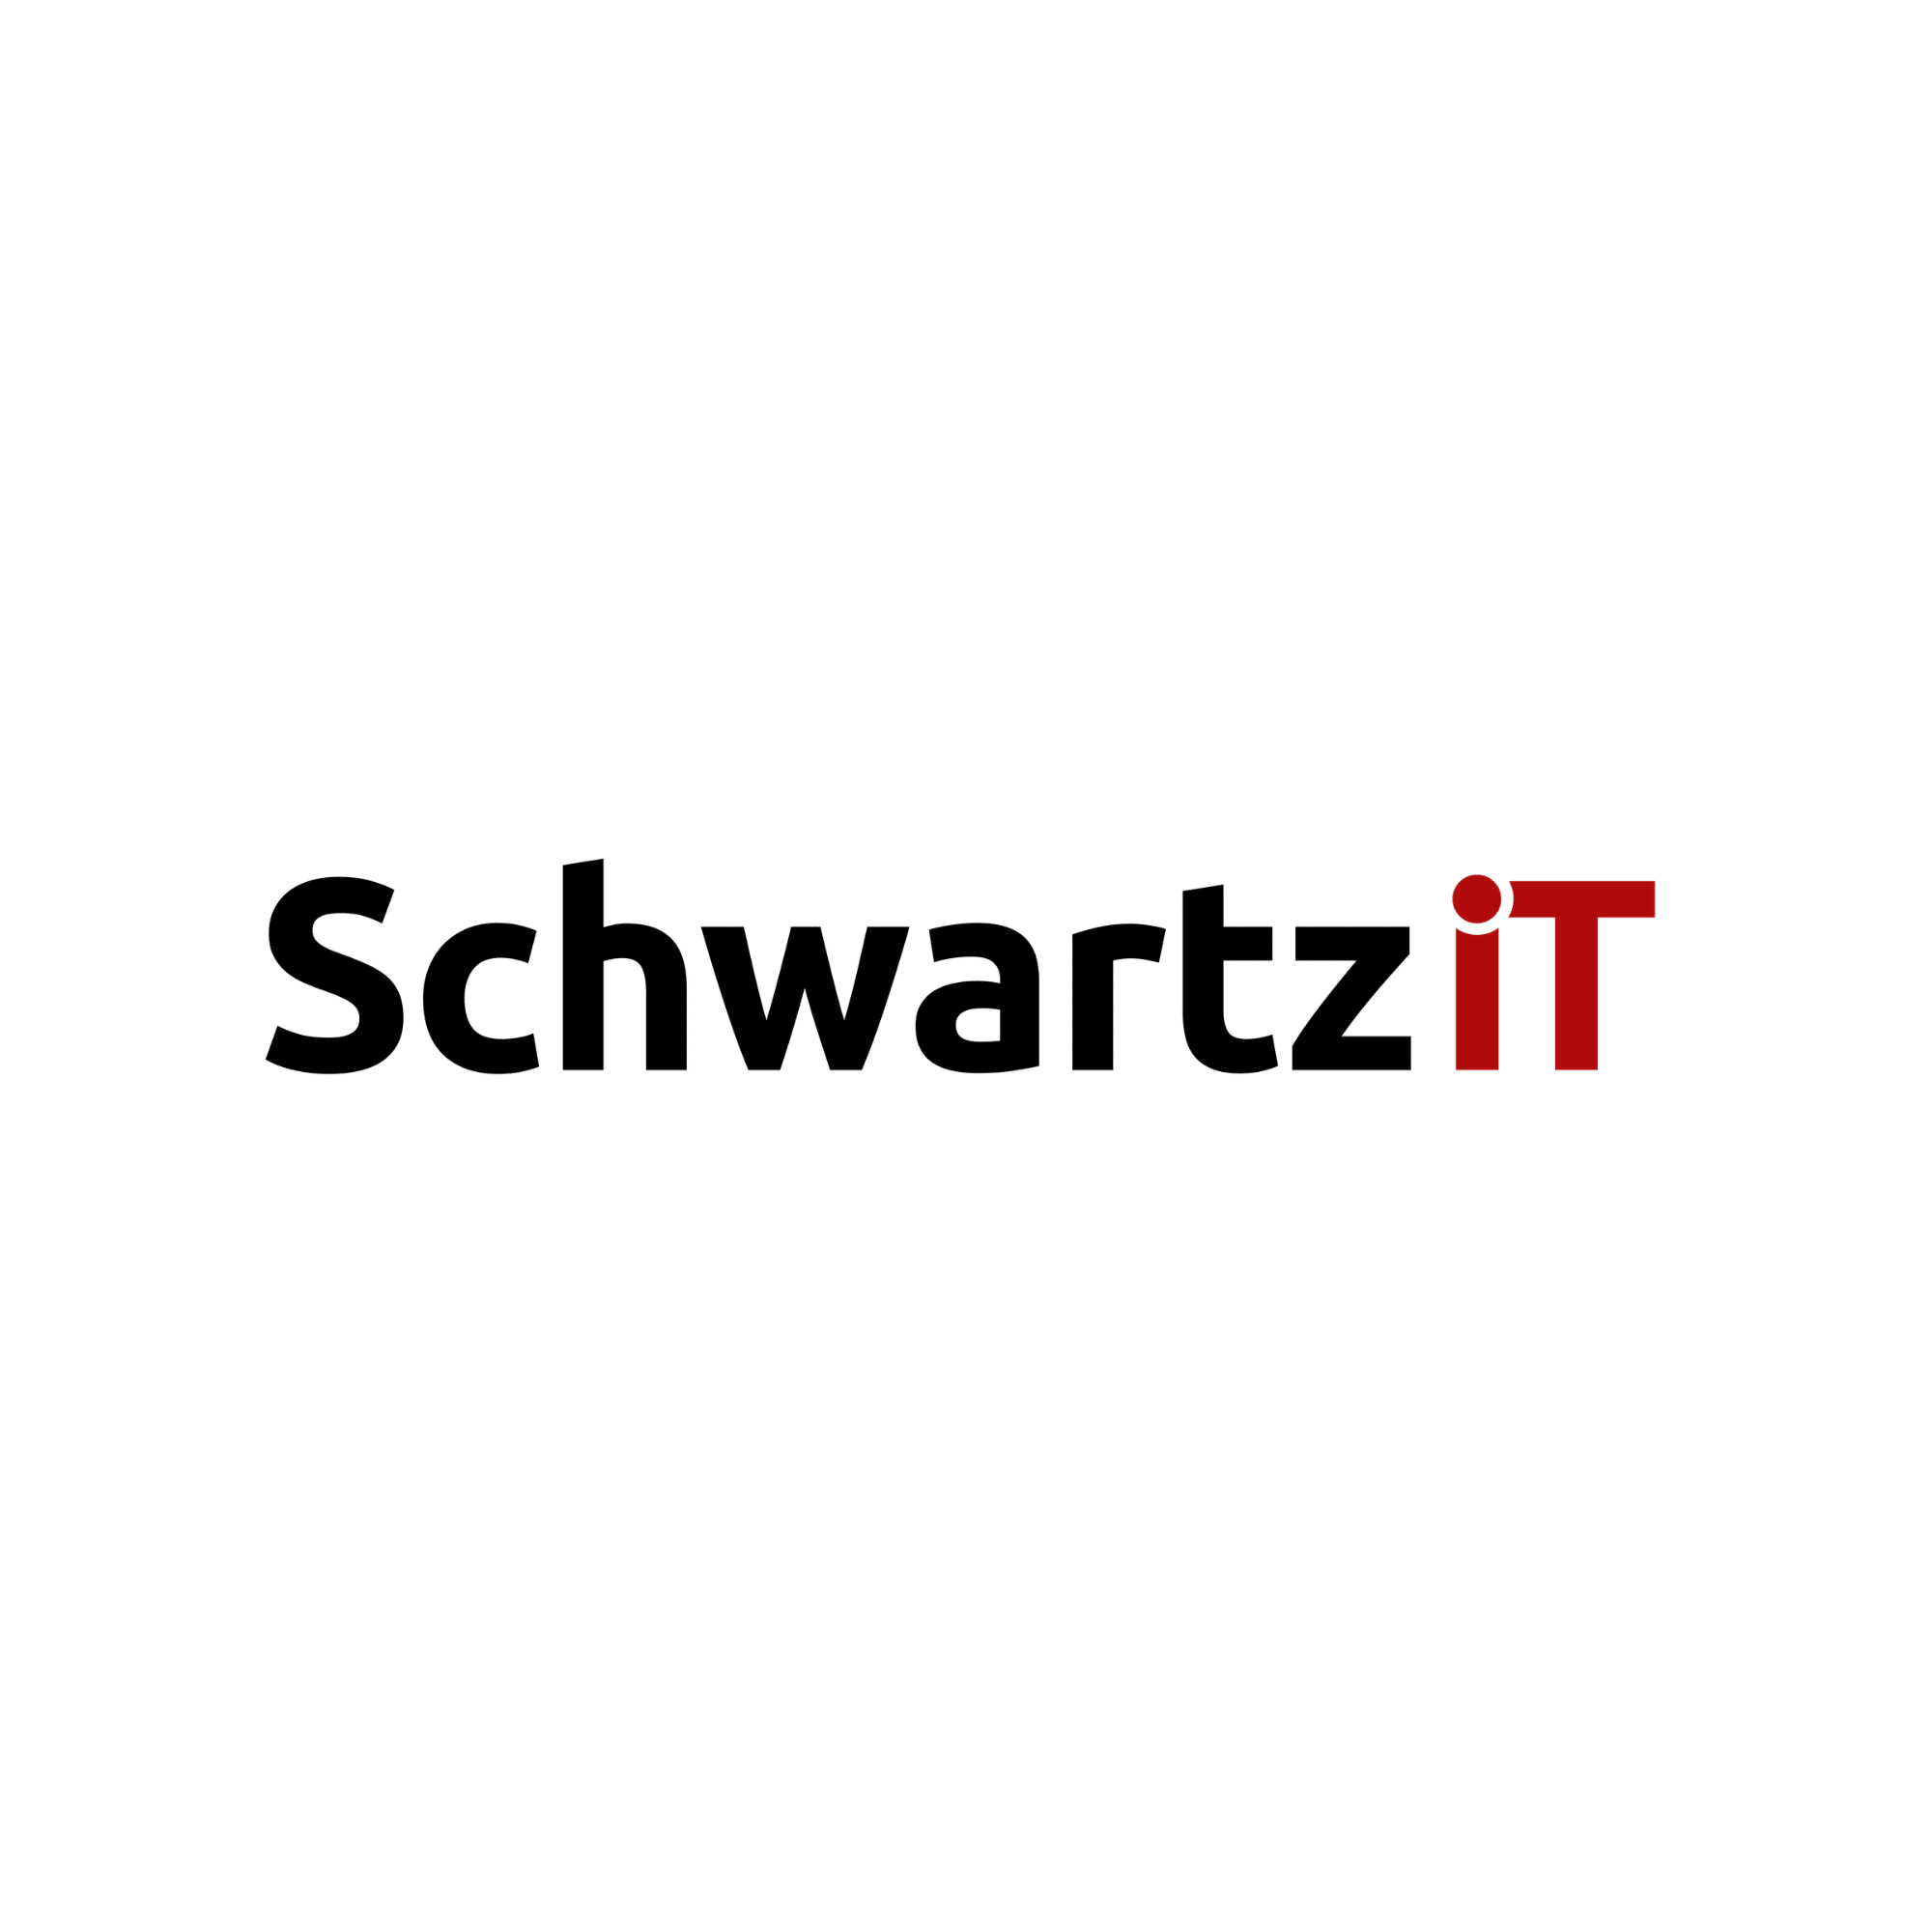 Schwartz it Logo